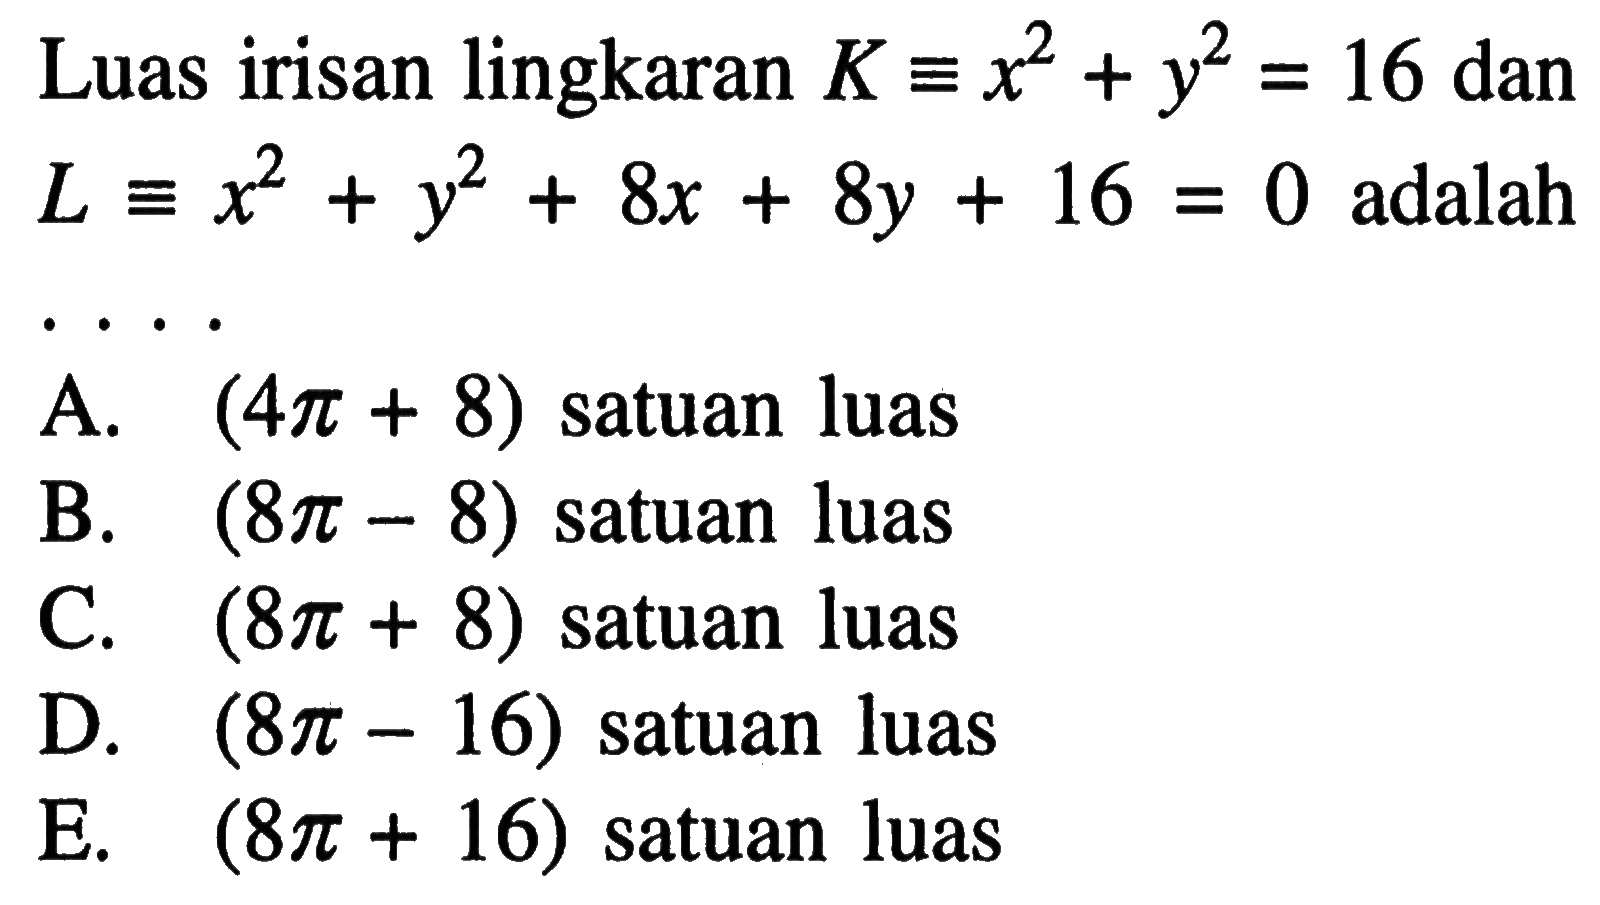 Luas irisan lingkaran  K ekuivalen x^2+y^2=16 dan L ekuivalen x^2+y^2+8x+8y+16=0  adalah